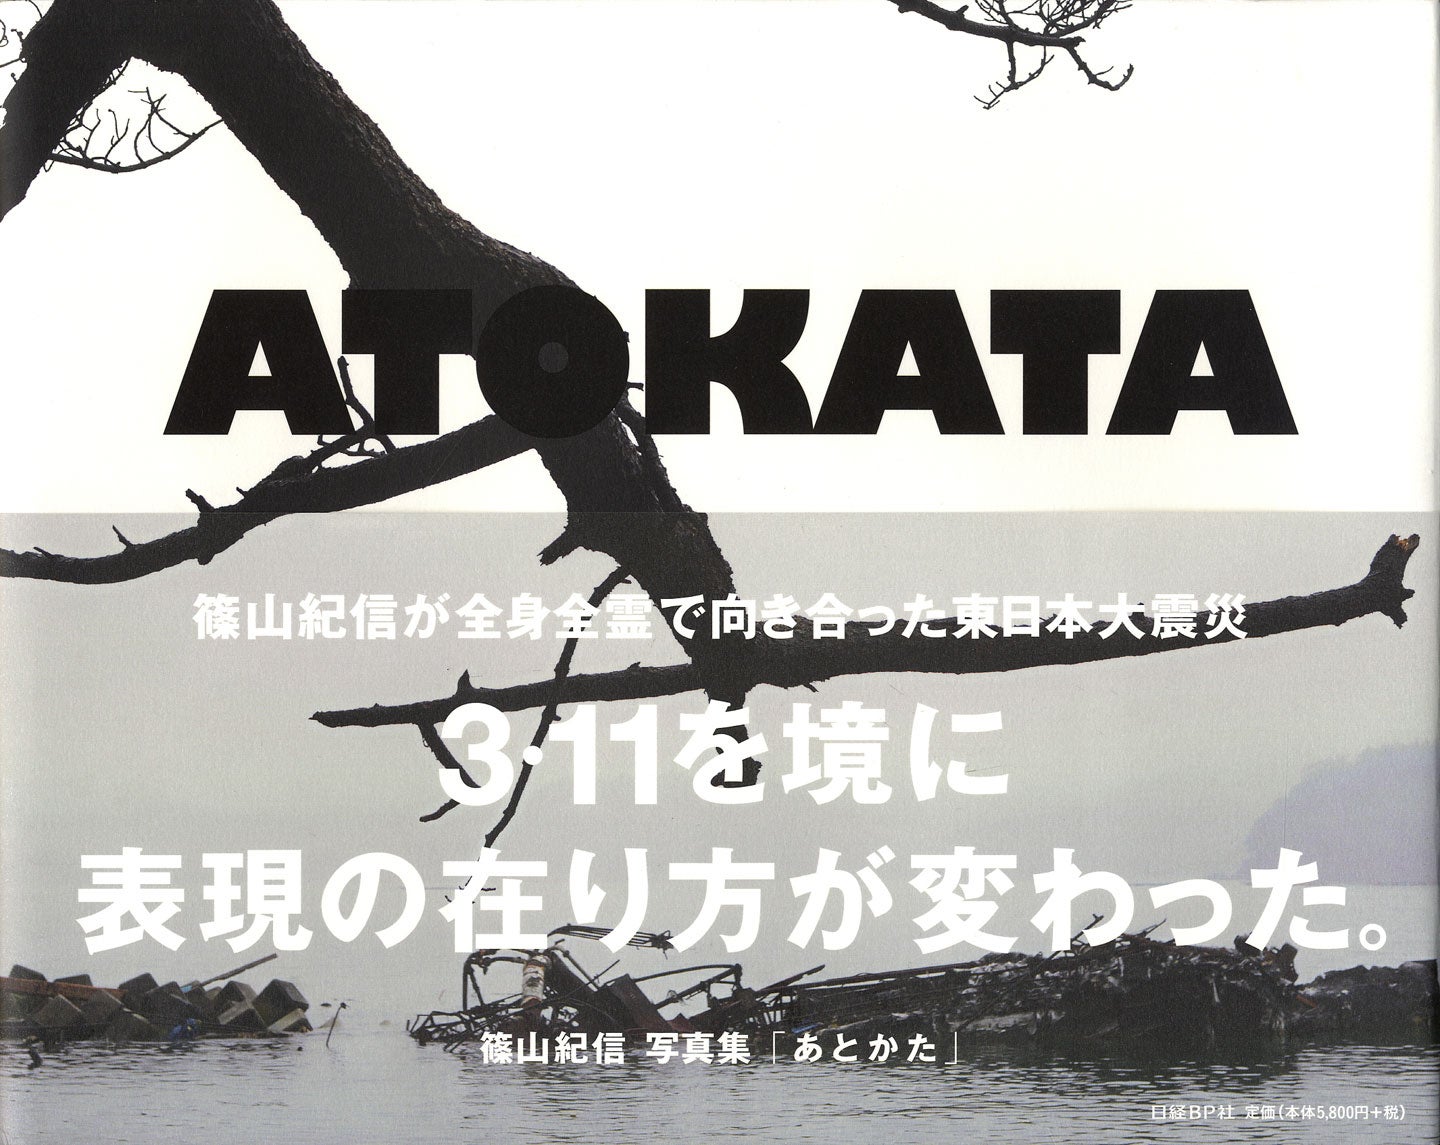 Kishin Shinoyama: Atokata (What Is Left There)